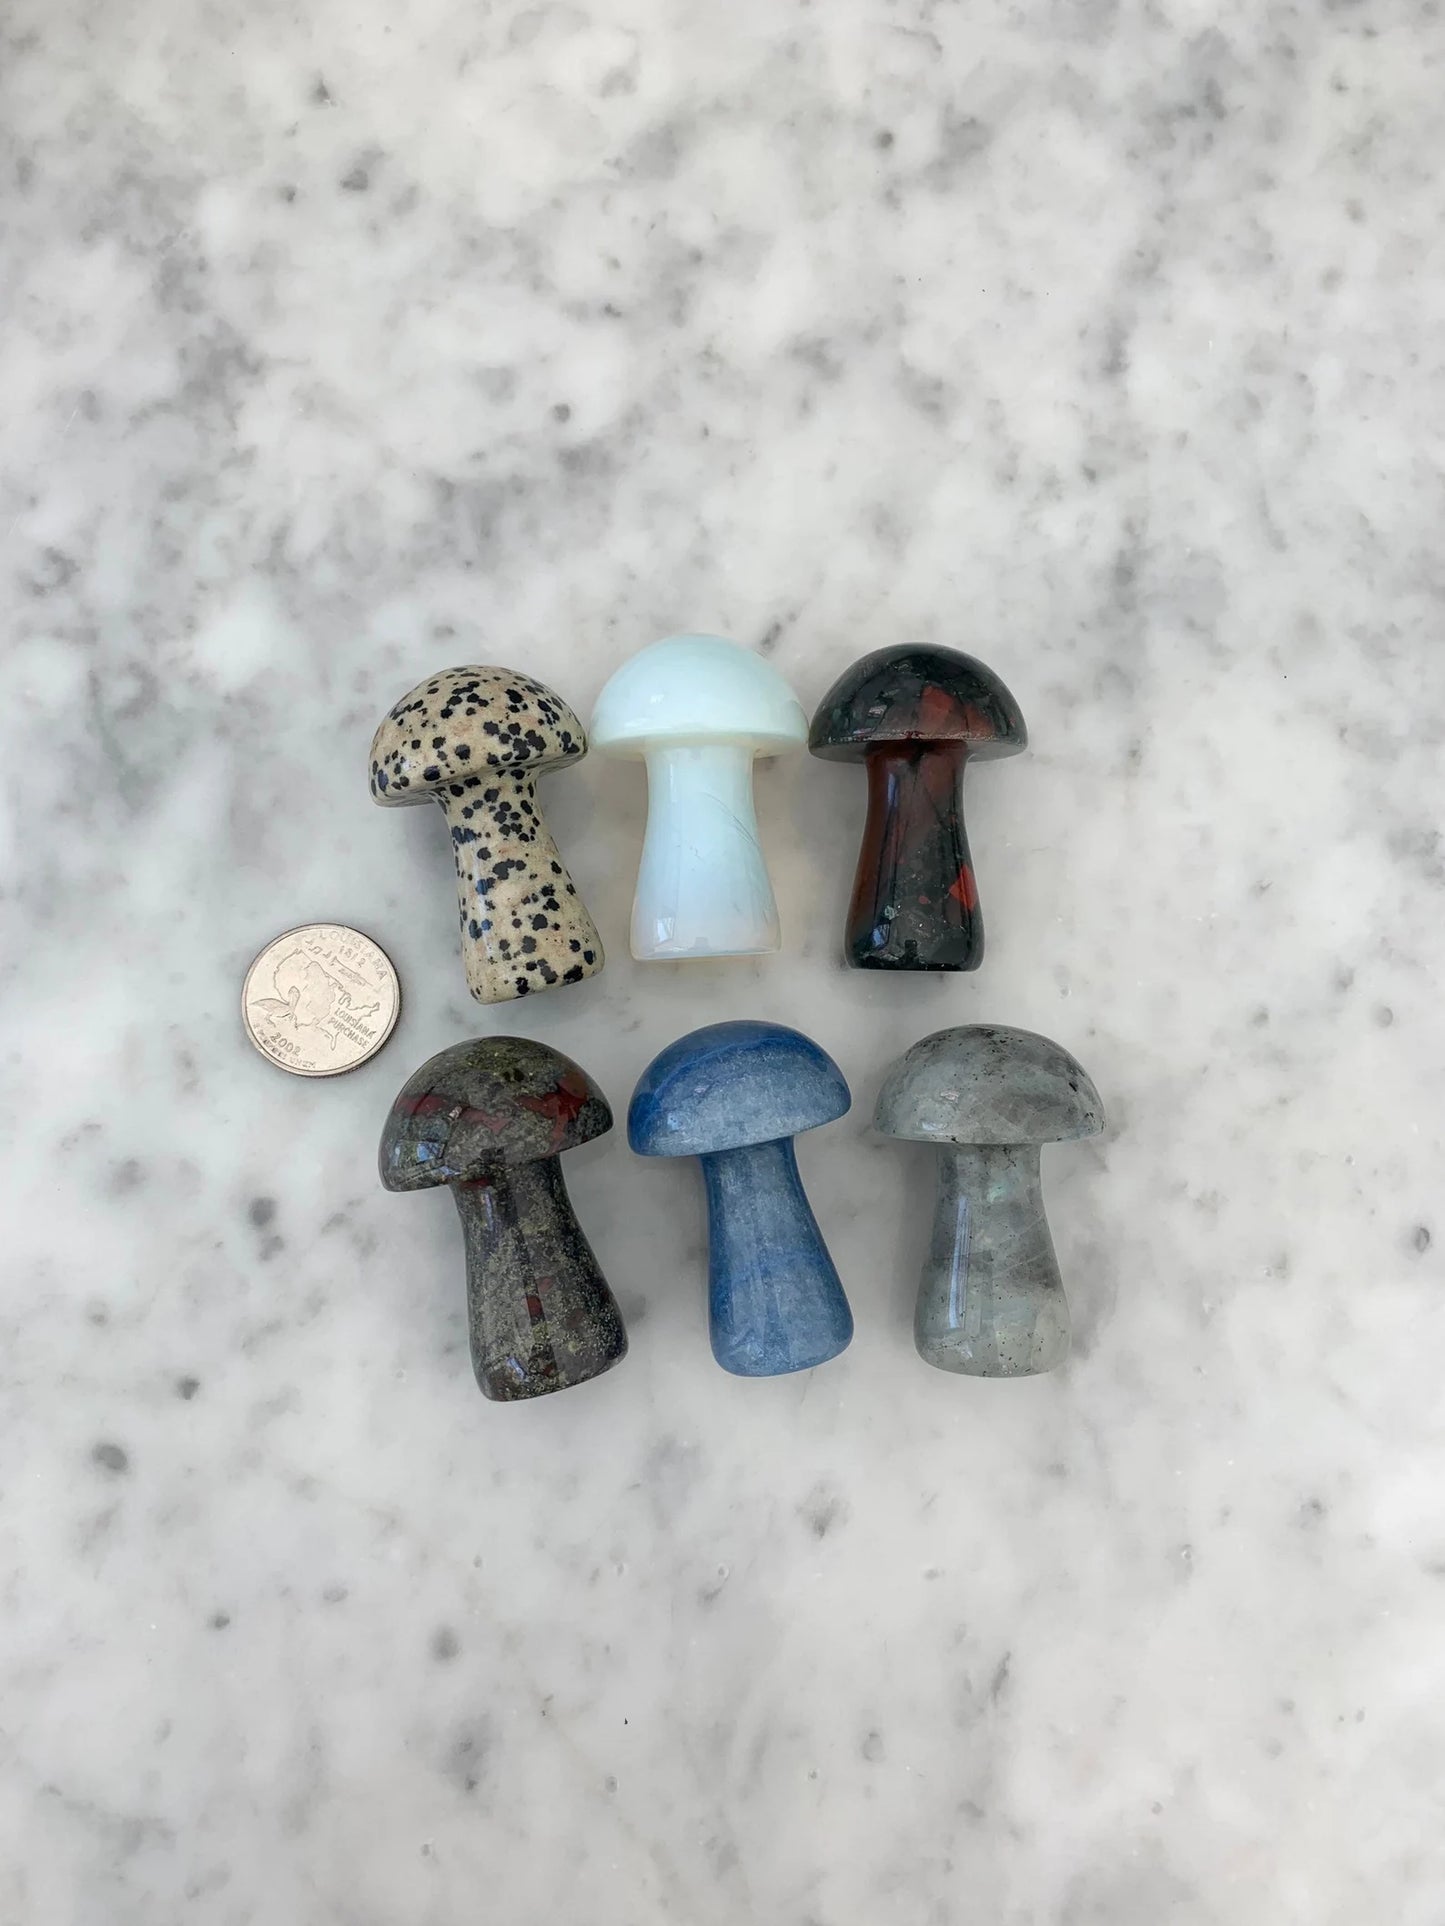 Crystal Mushroom Gemstones Crystal Carving Figurines, Natural Stone Hand Carved Mushroom Shaped